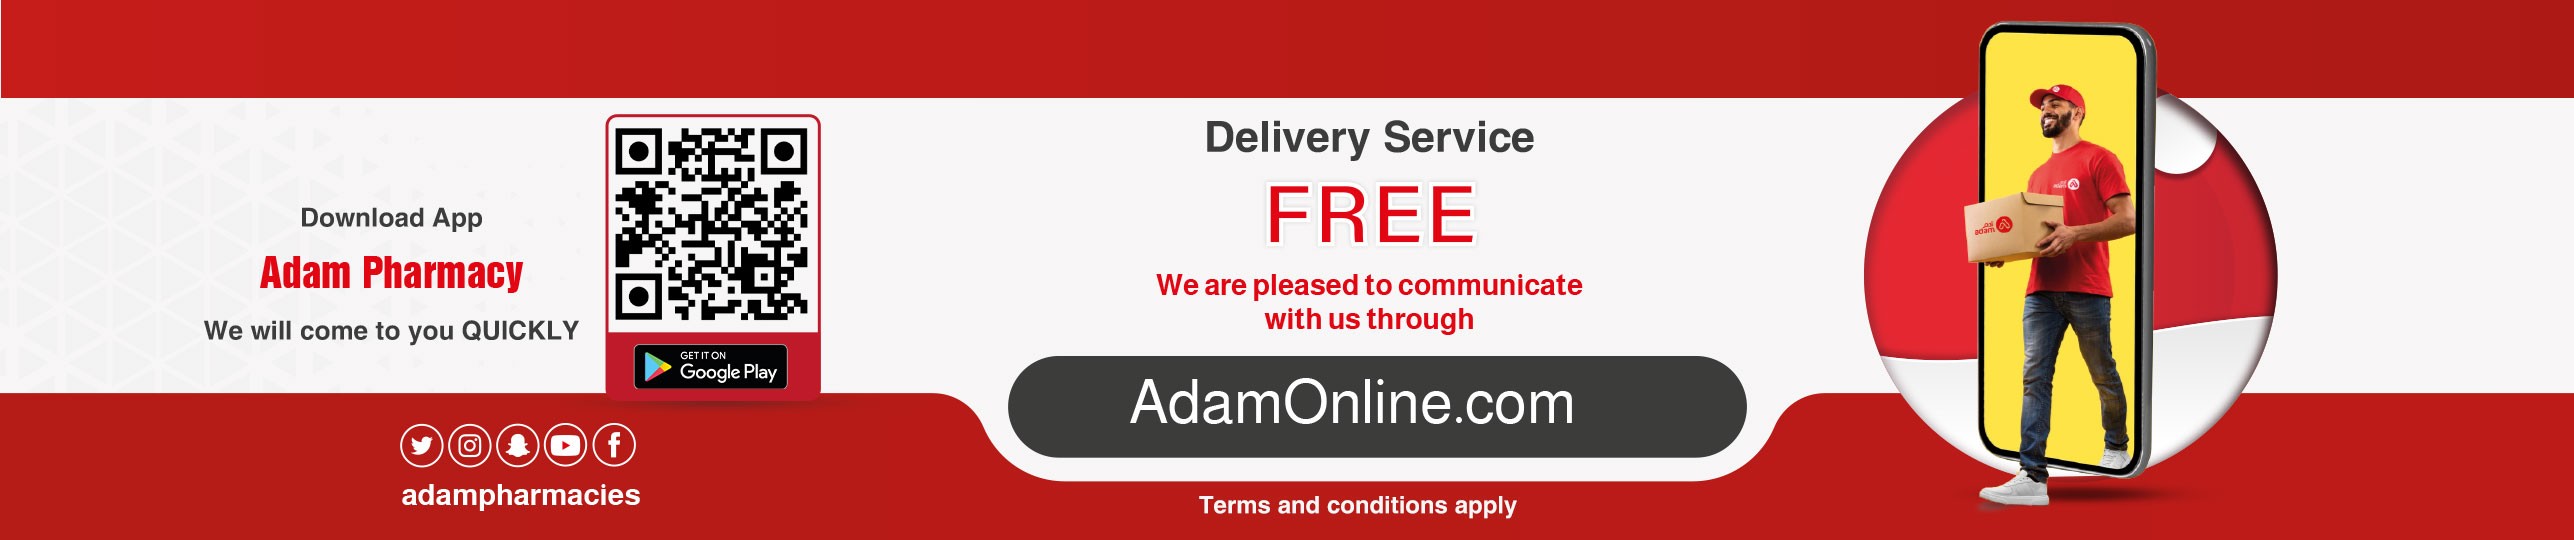 delivery_en.jpg | Adam Pharmacies